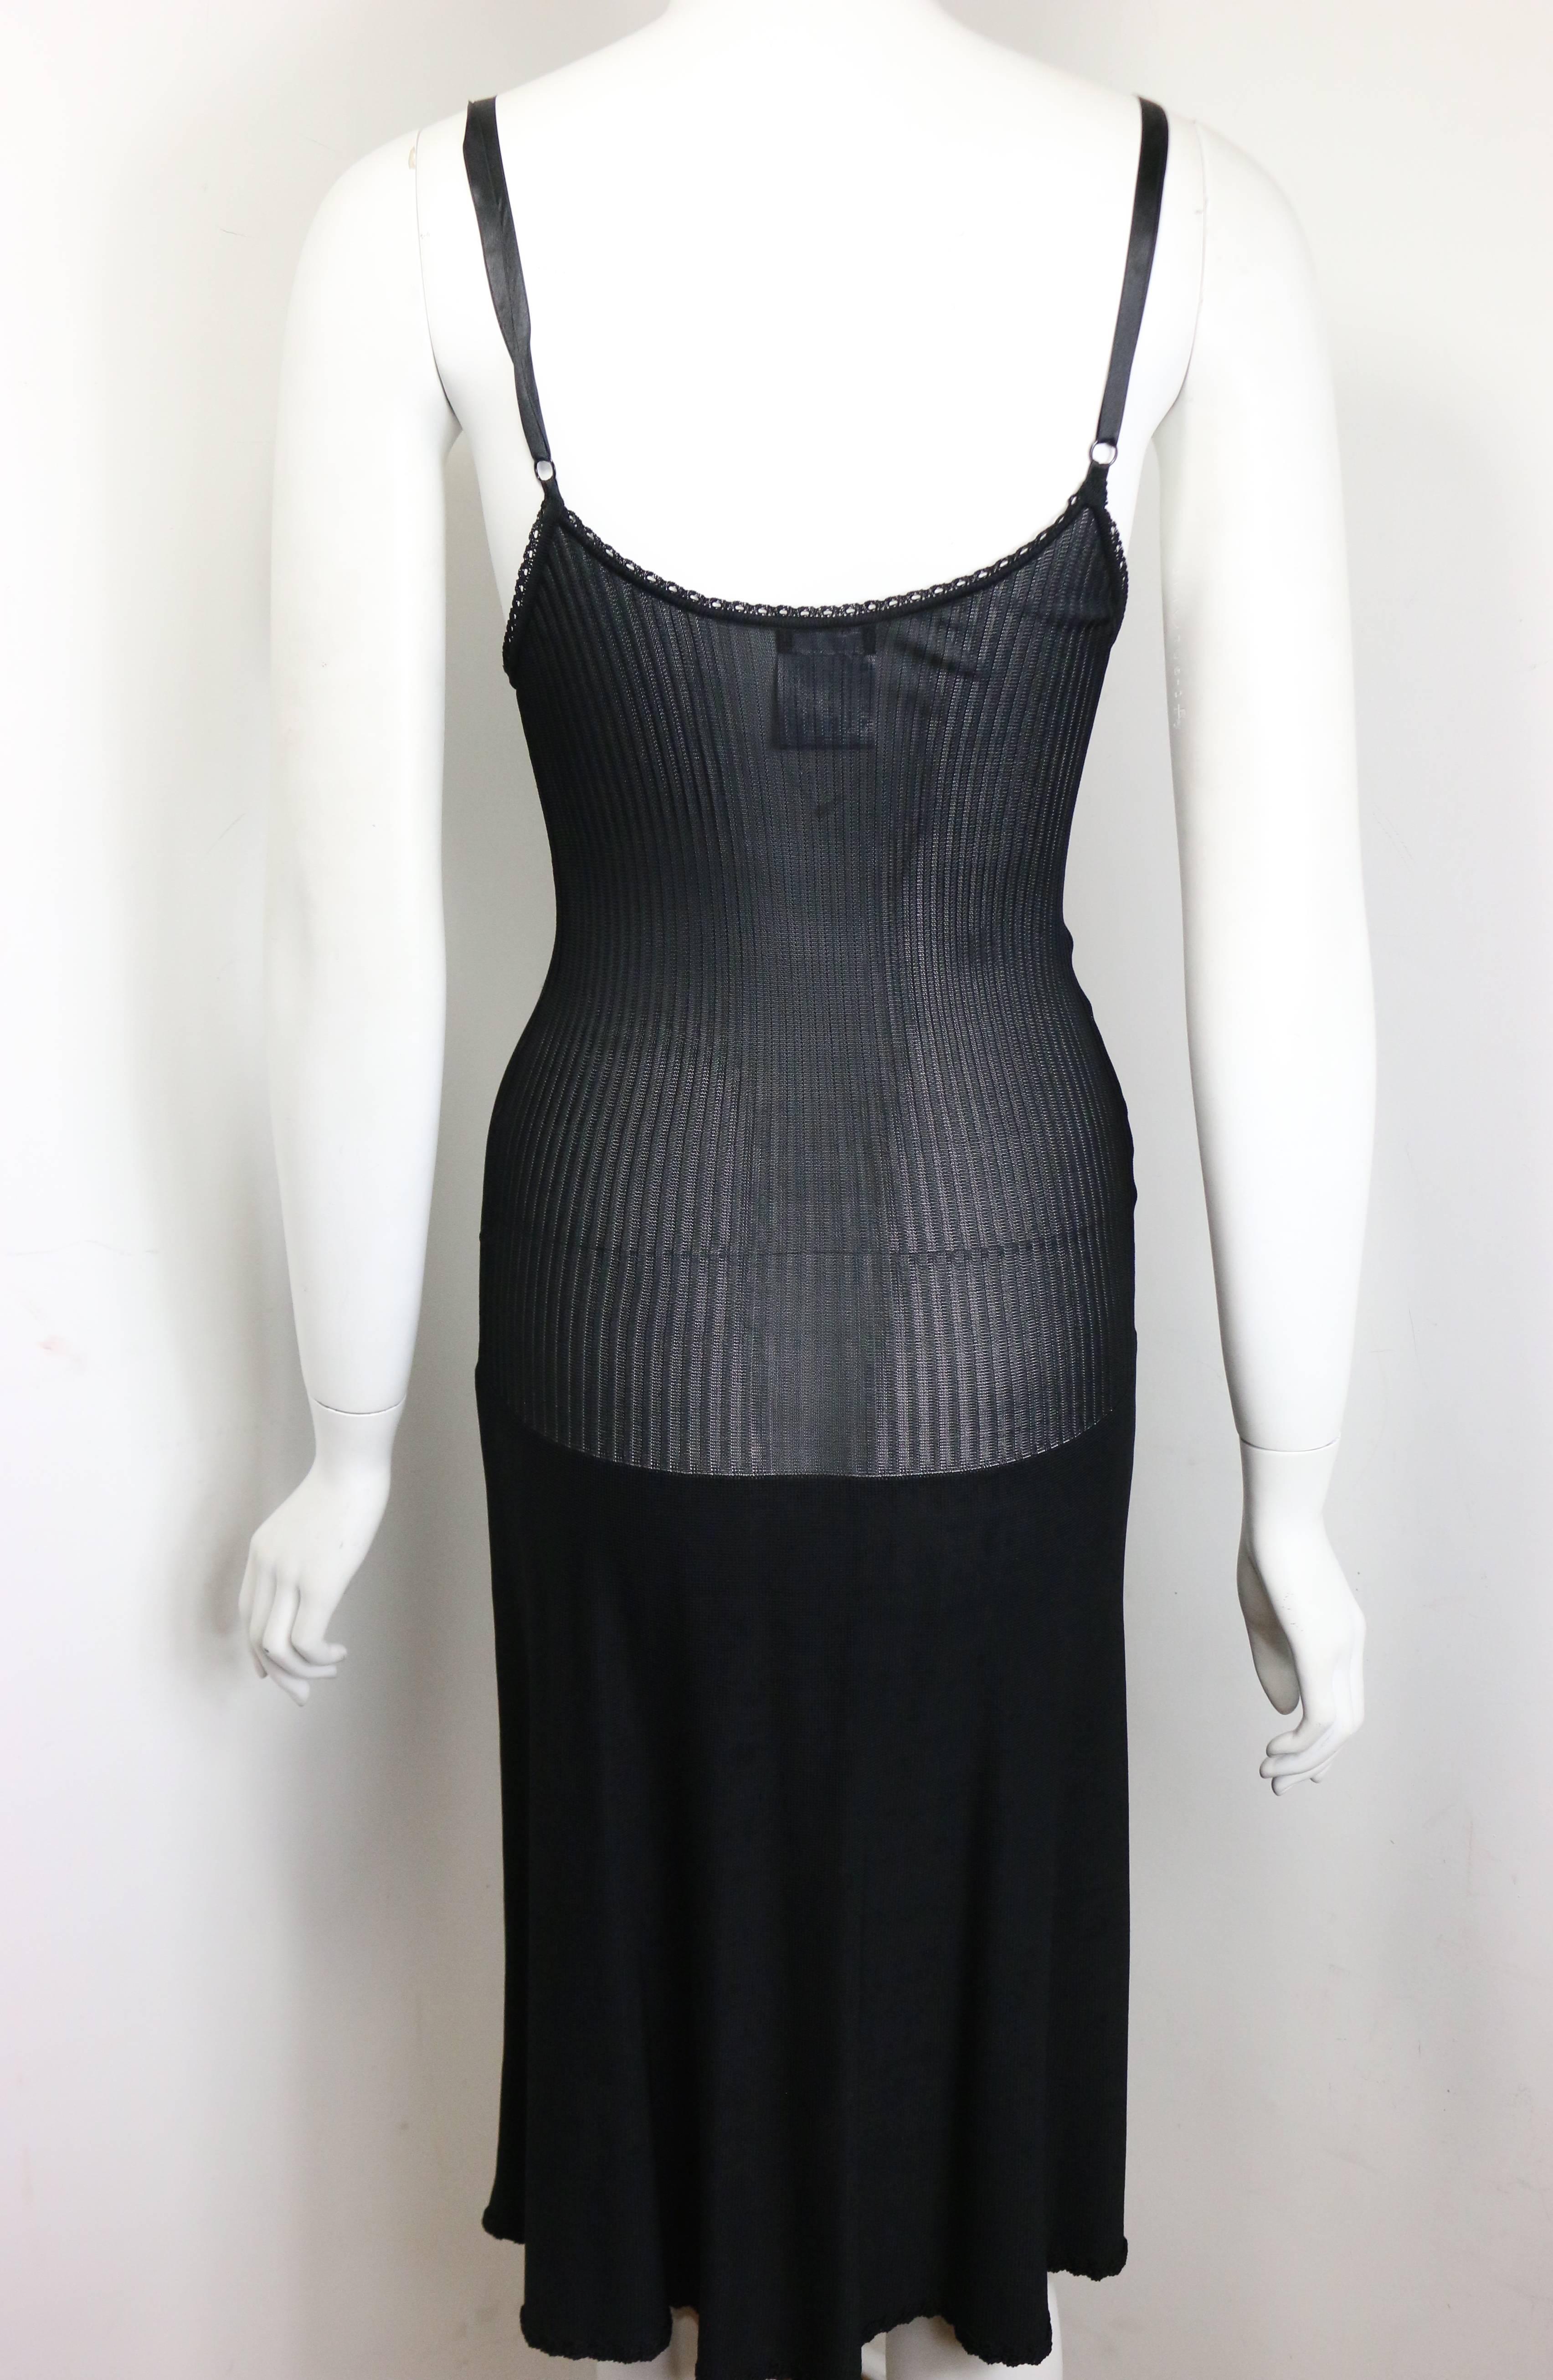 - Année 2008p Chanel robe en maille noire à bretelles spaghetti, avec une zone de buste en dentelle noire, une maille légère au milieu, et un bas en maille. Un logo 